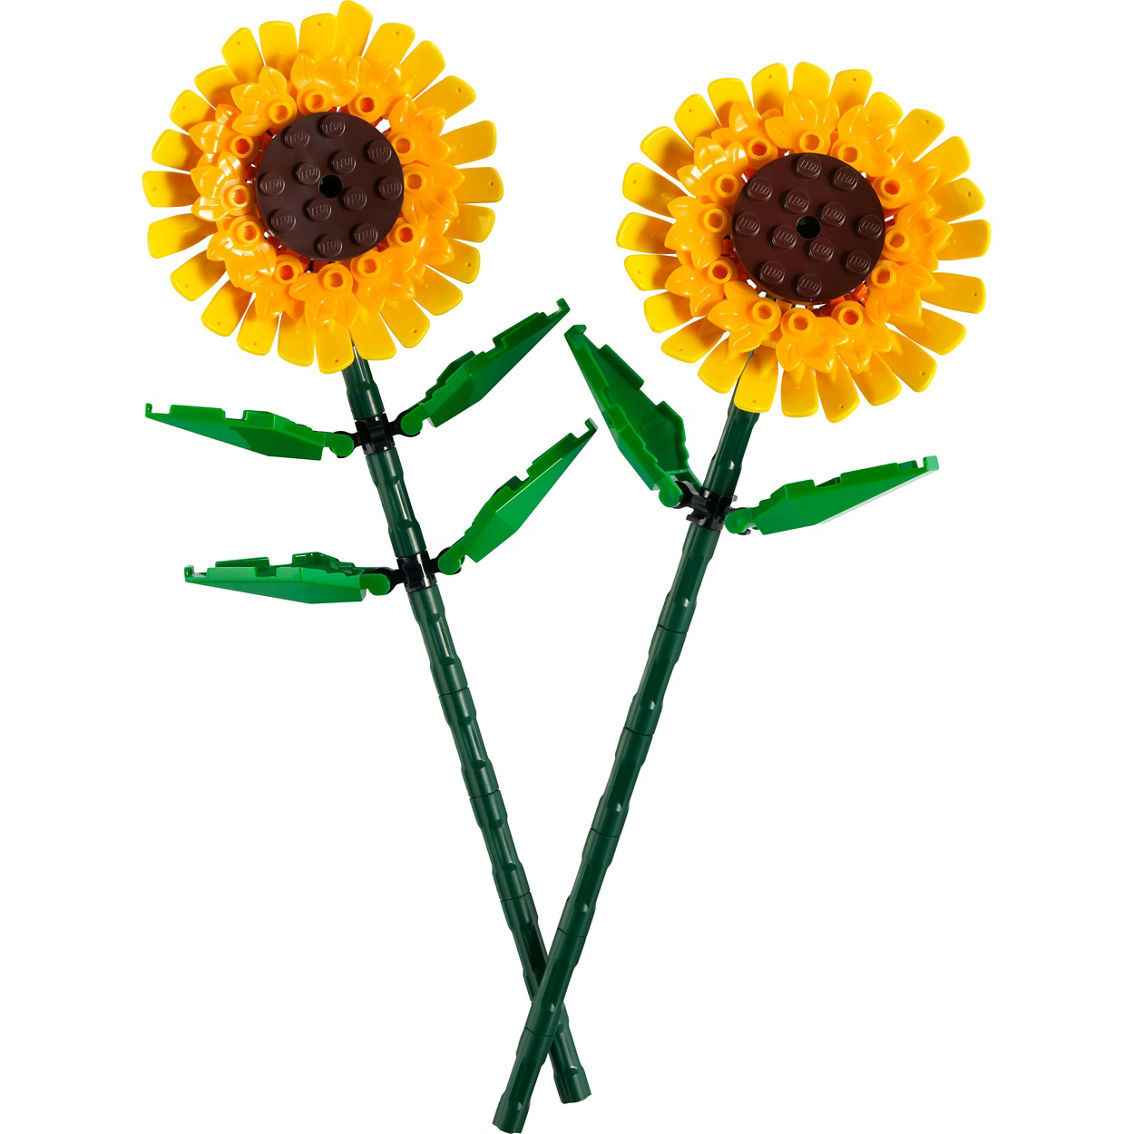 LEGO LEL Flowers Sunflowers 40524 - Image 3 of 7